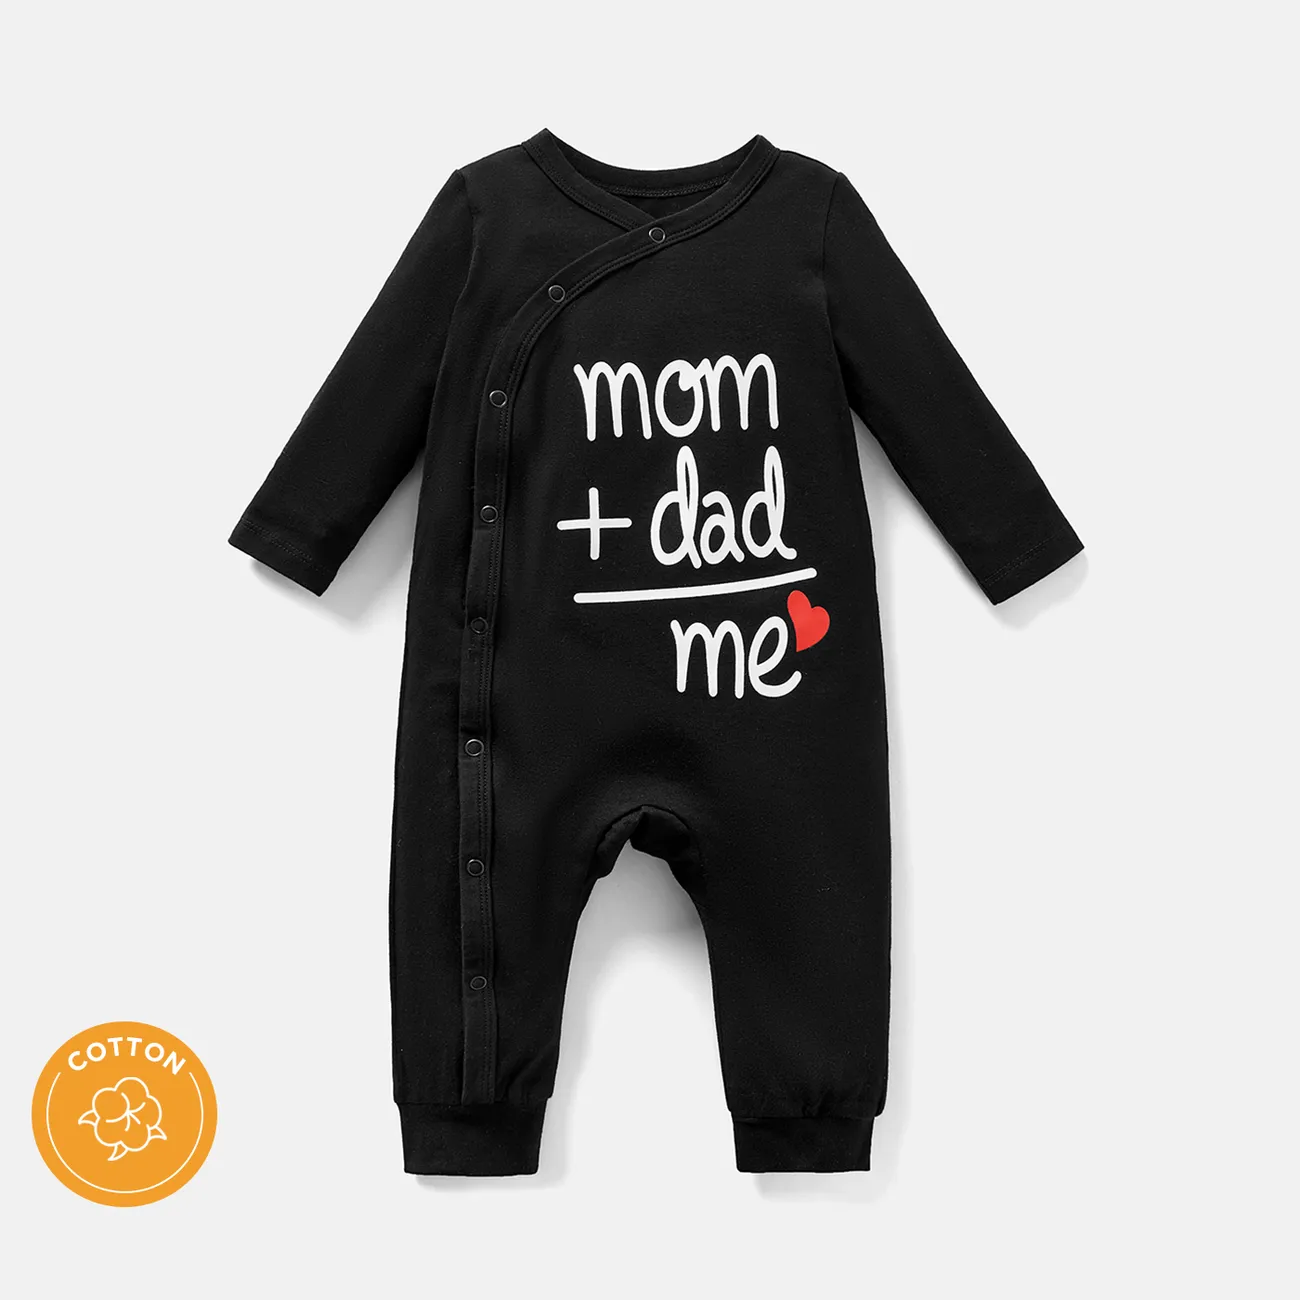 Macacão de manga comprida com design de botão de algodão para bebê menina/menino Preto big image 1